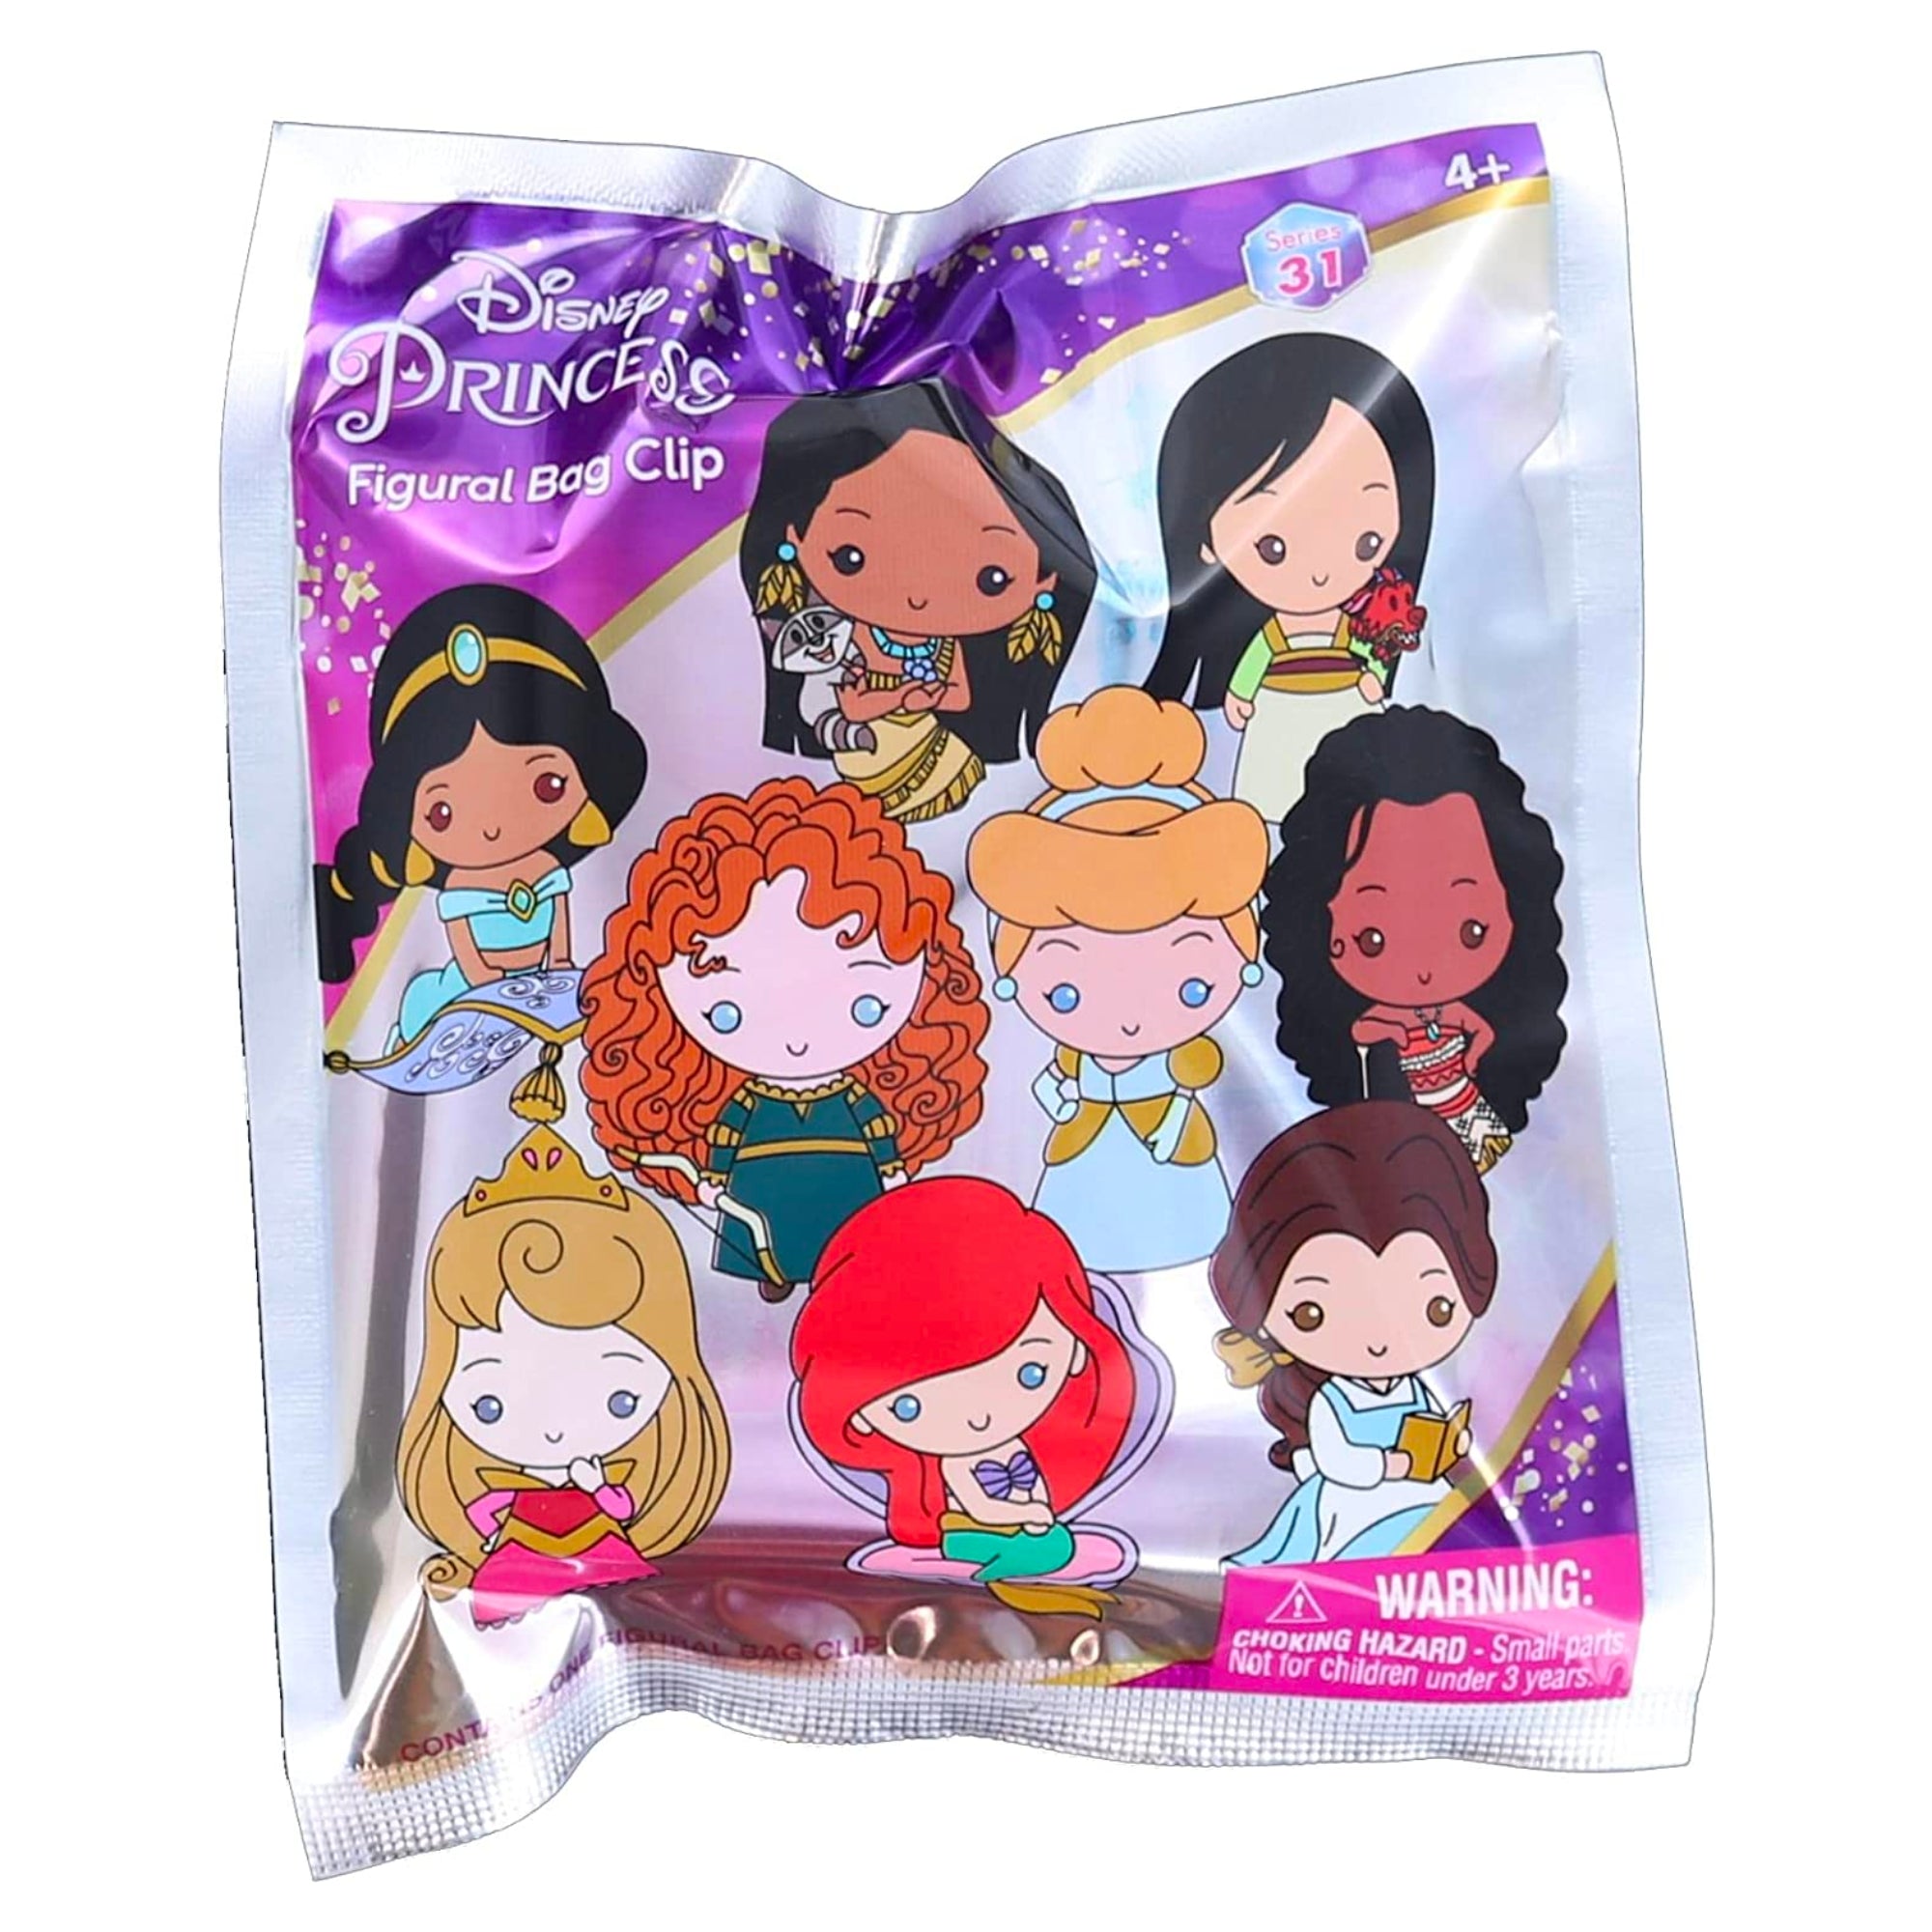 Disney Ultimate Princess Celebration Bag Clip Blind Bag